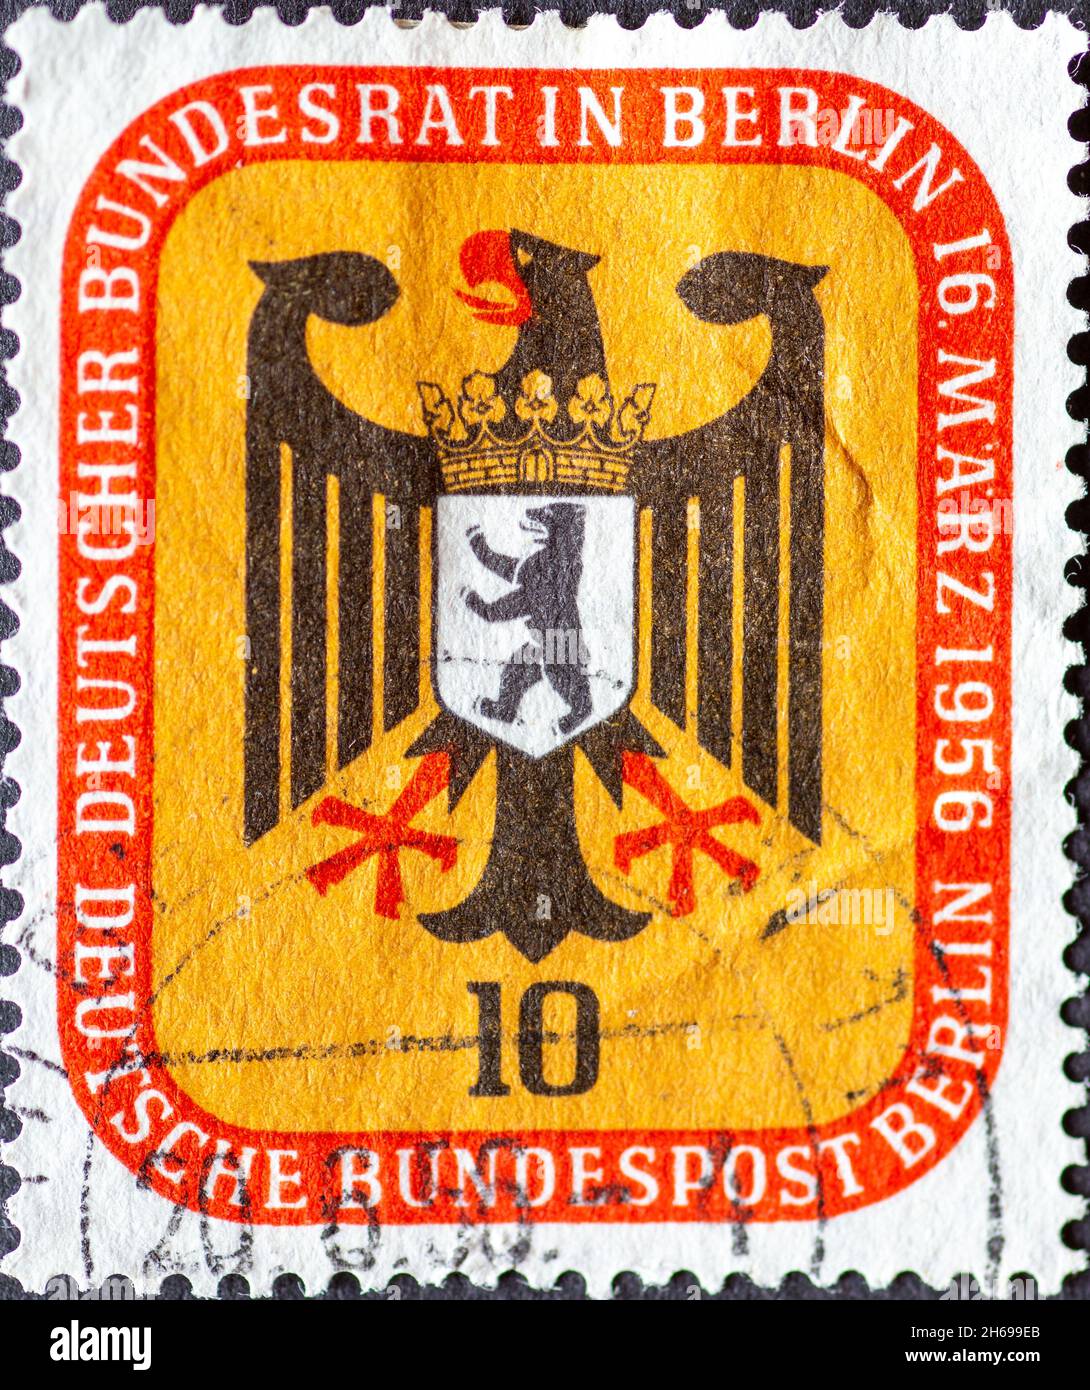 ALLEMAGNE, Berlin - VERS 1956: Timbre-poste de l'Allemagne, Berlin montrant l'aigle fédéral et les armoiries de Berlin.Conseil fédéral Allemagne à Berlin Banque D'Images